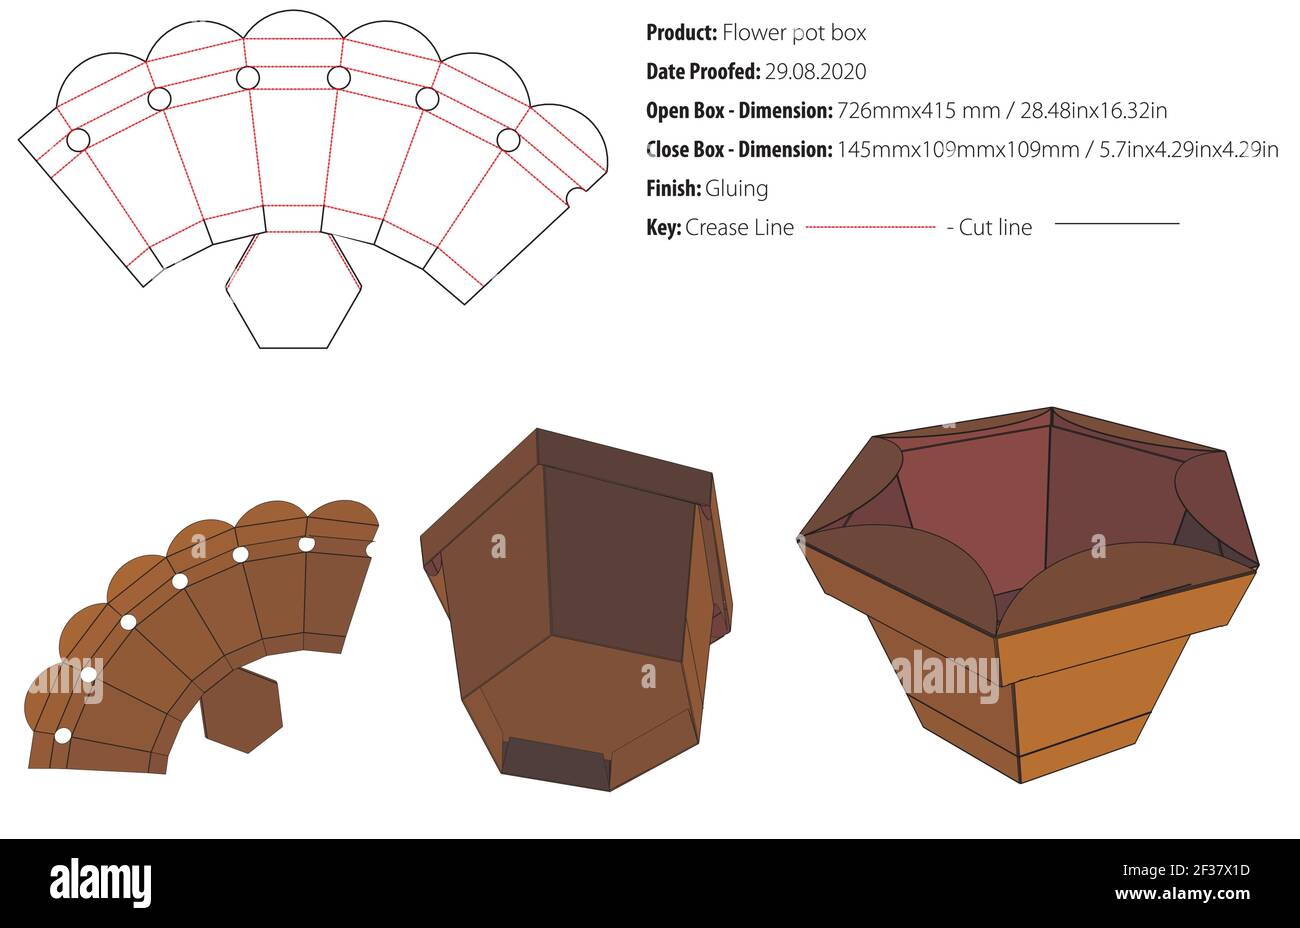 Blume Topf Box Verpackung Design Vorlage kleben die geschnitten - Vektor Stock Vektor